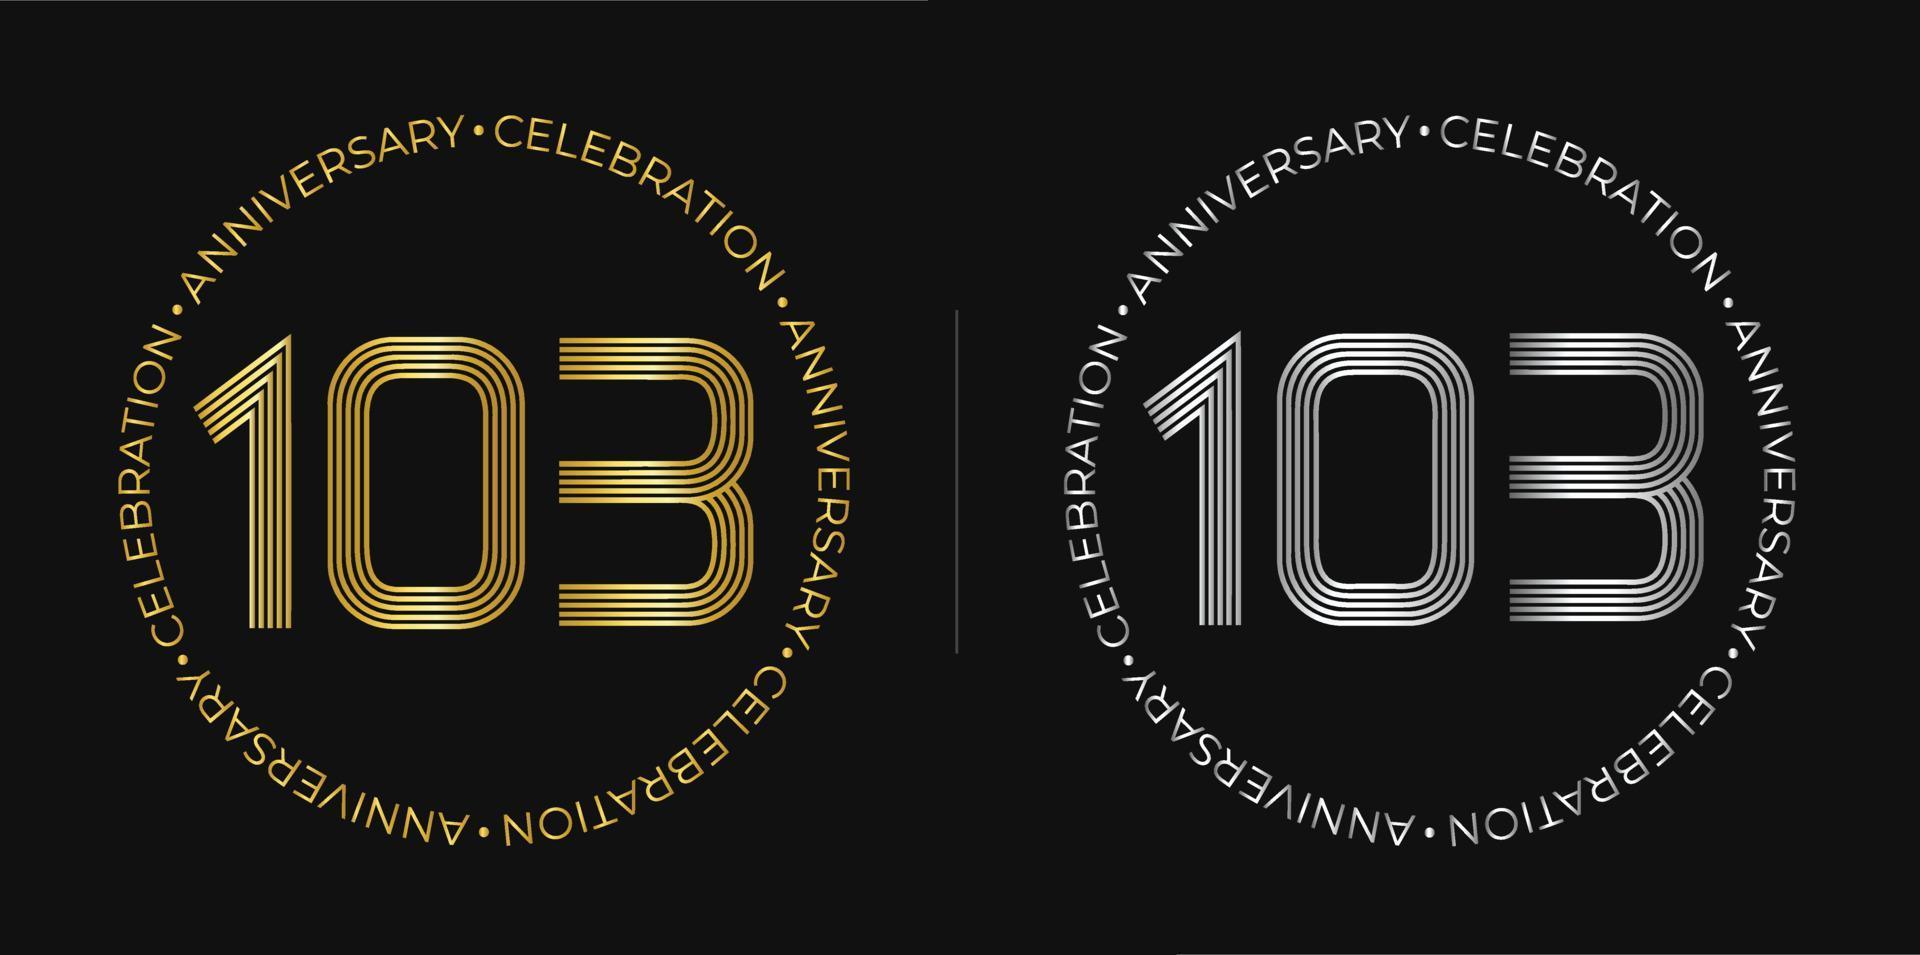 103º aniversário. banner de celebração de aniversário de cento e três anos em cores douradas e prateadas. logotipo circular com design de números originais em linhas elegantes. vetor